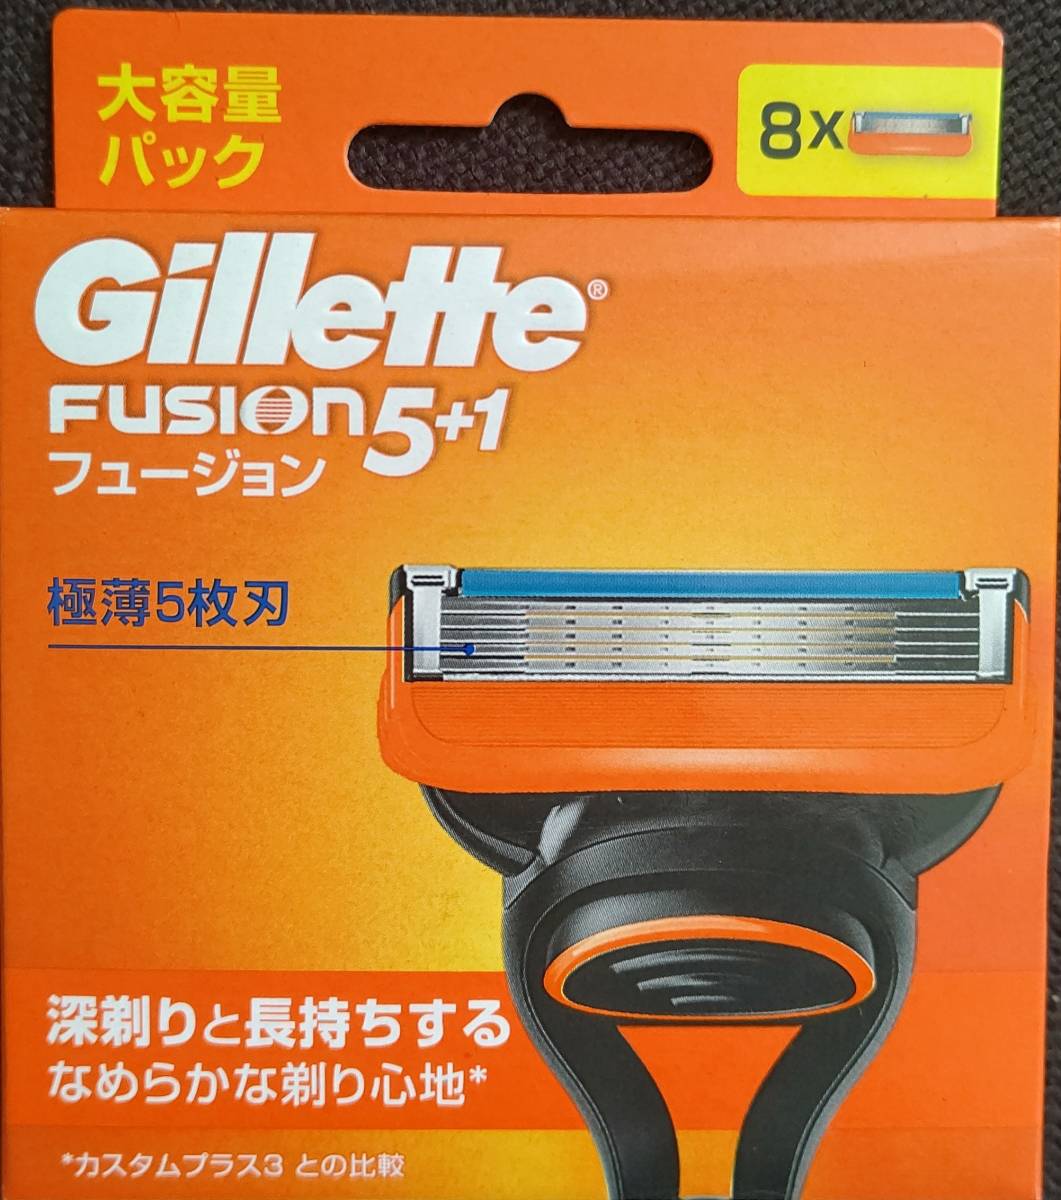 【新品】Gillette Fusion 5+1 替刃８コ入 即決ありの画像1